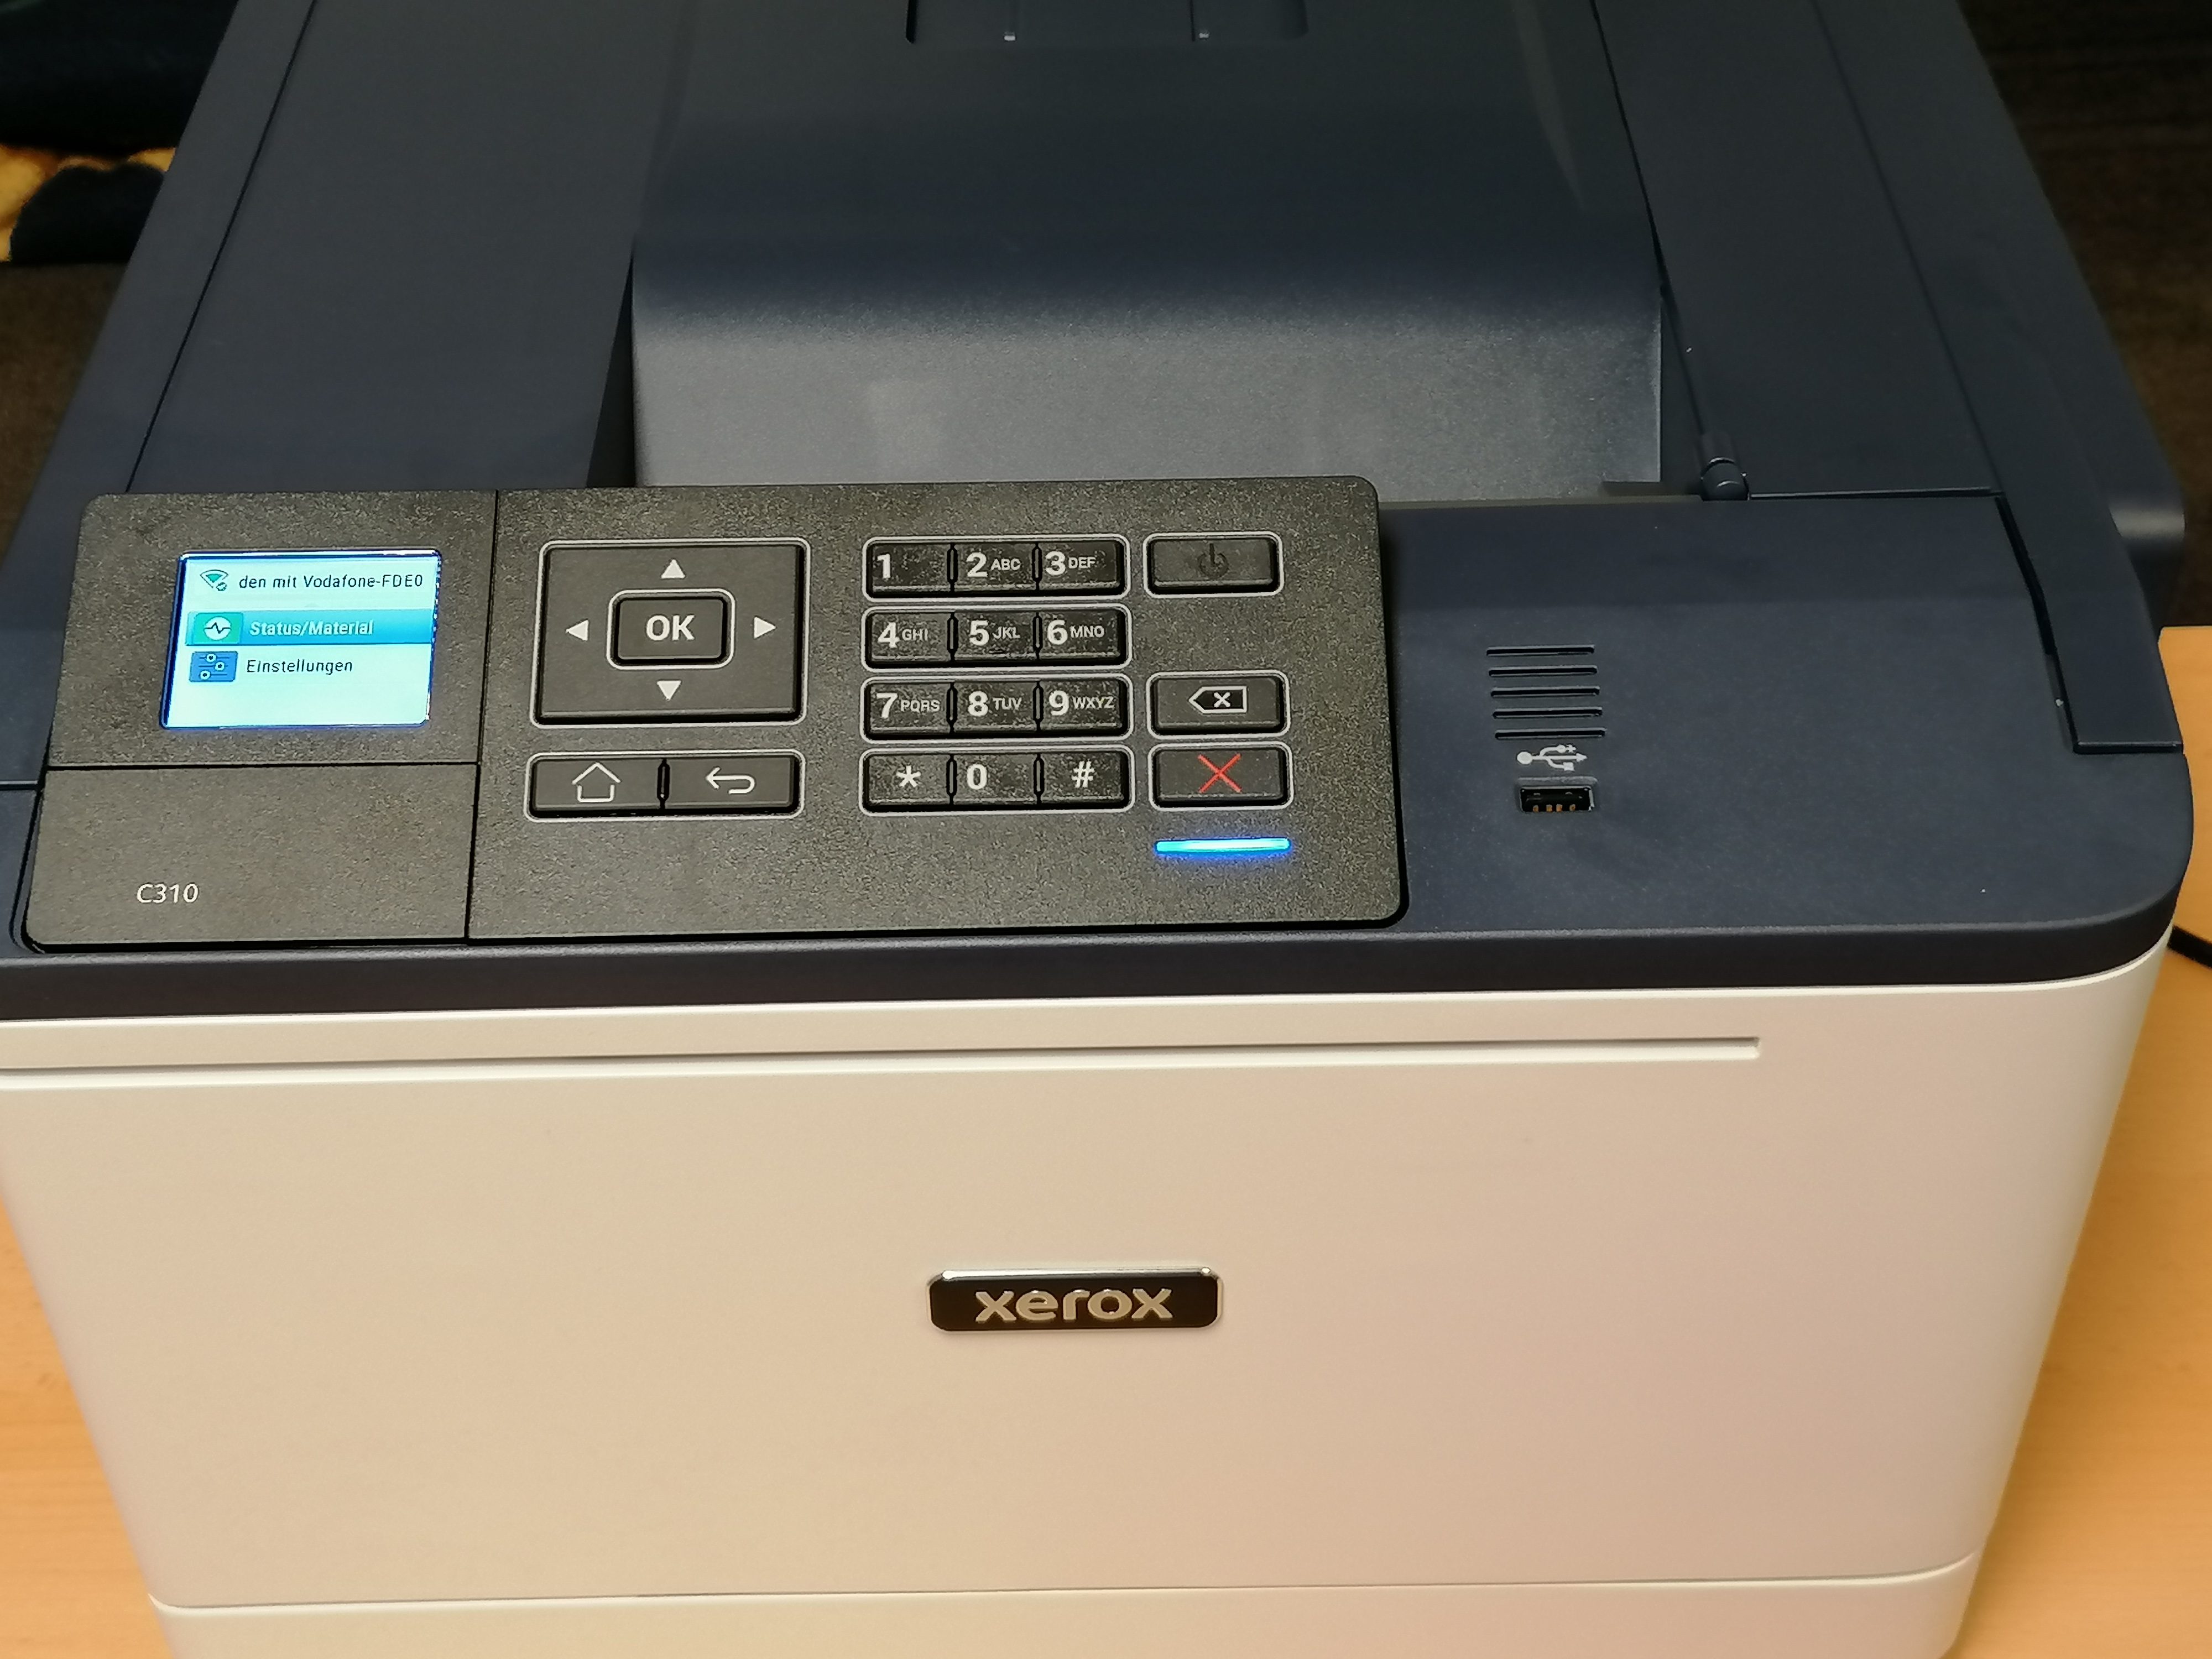 Xerox C310 